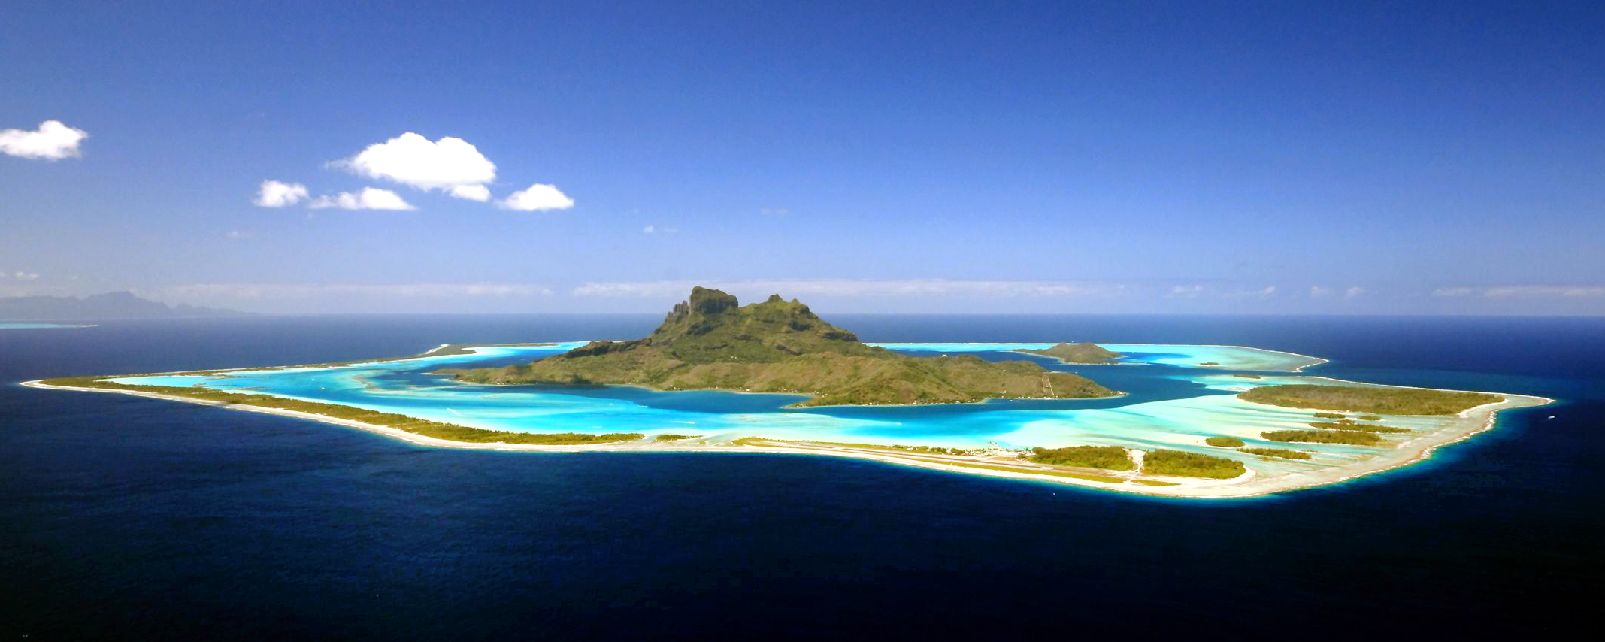 L’île de Bora Bora accueillera la première Conférence environnementale du Pacifique